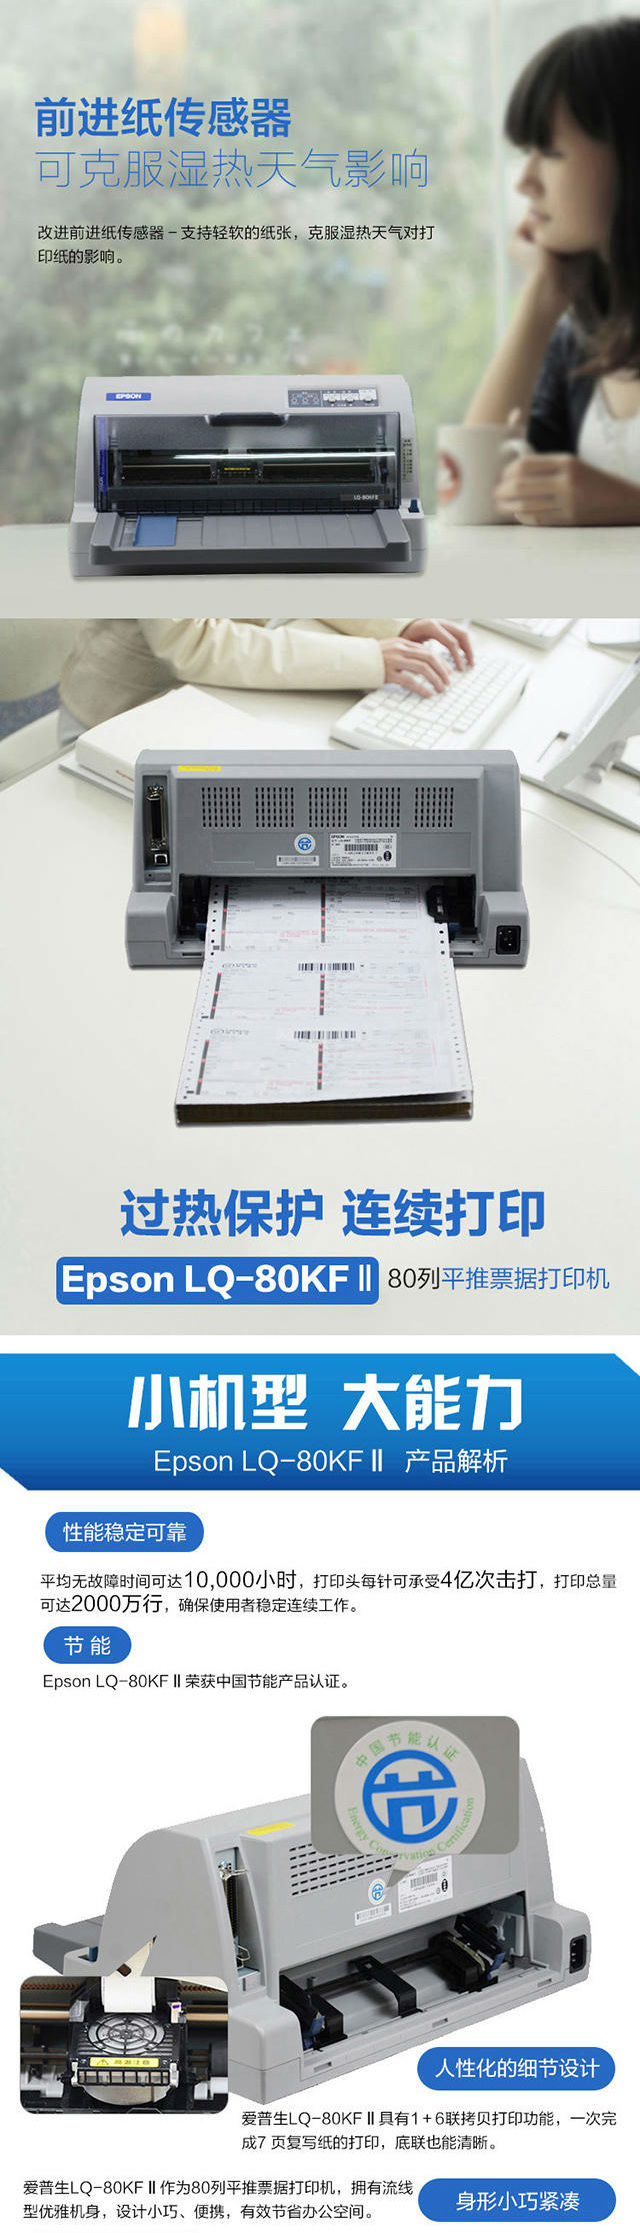 爱普生打印机2-1.jpg